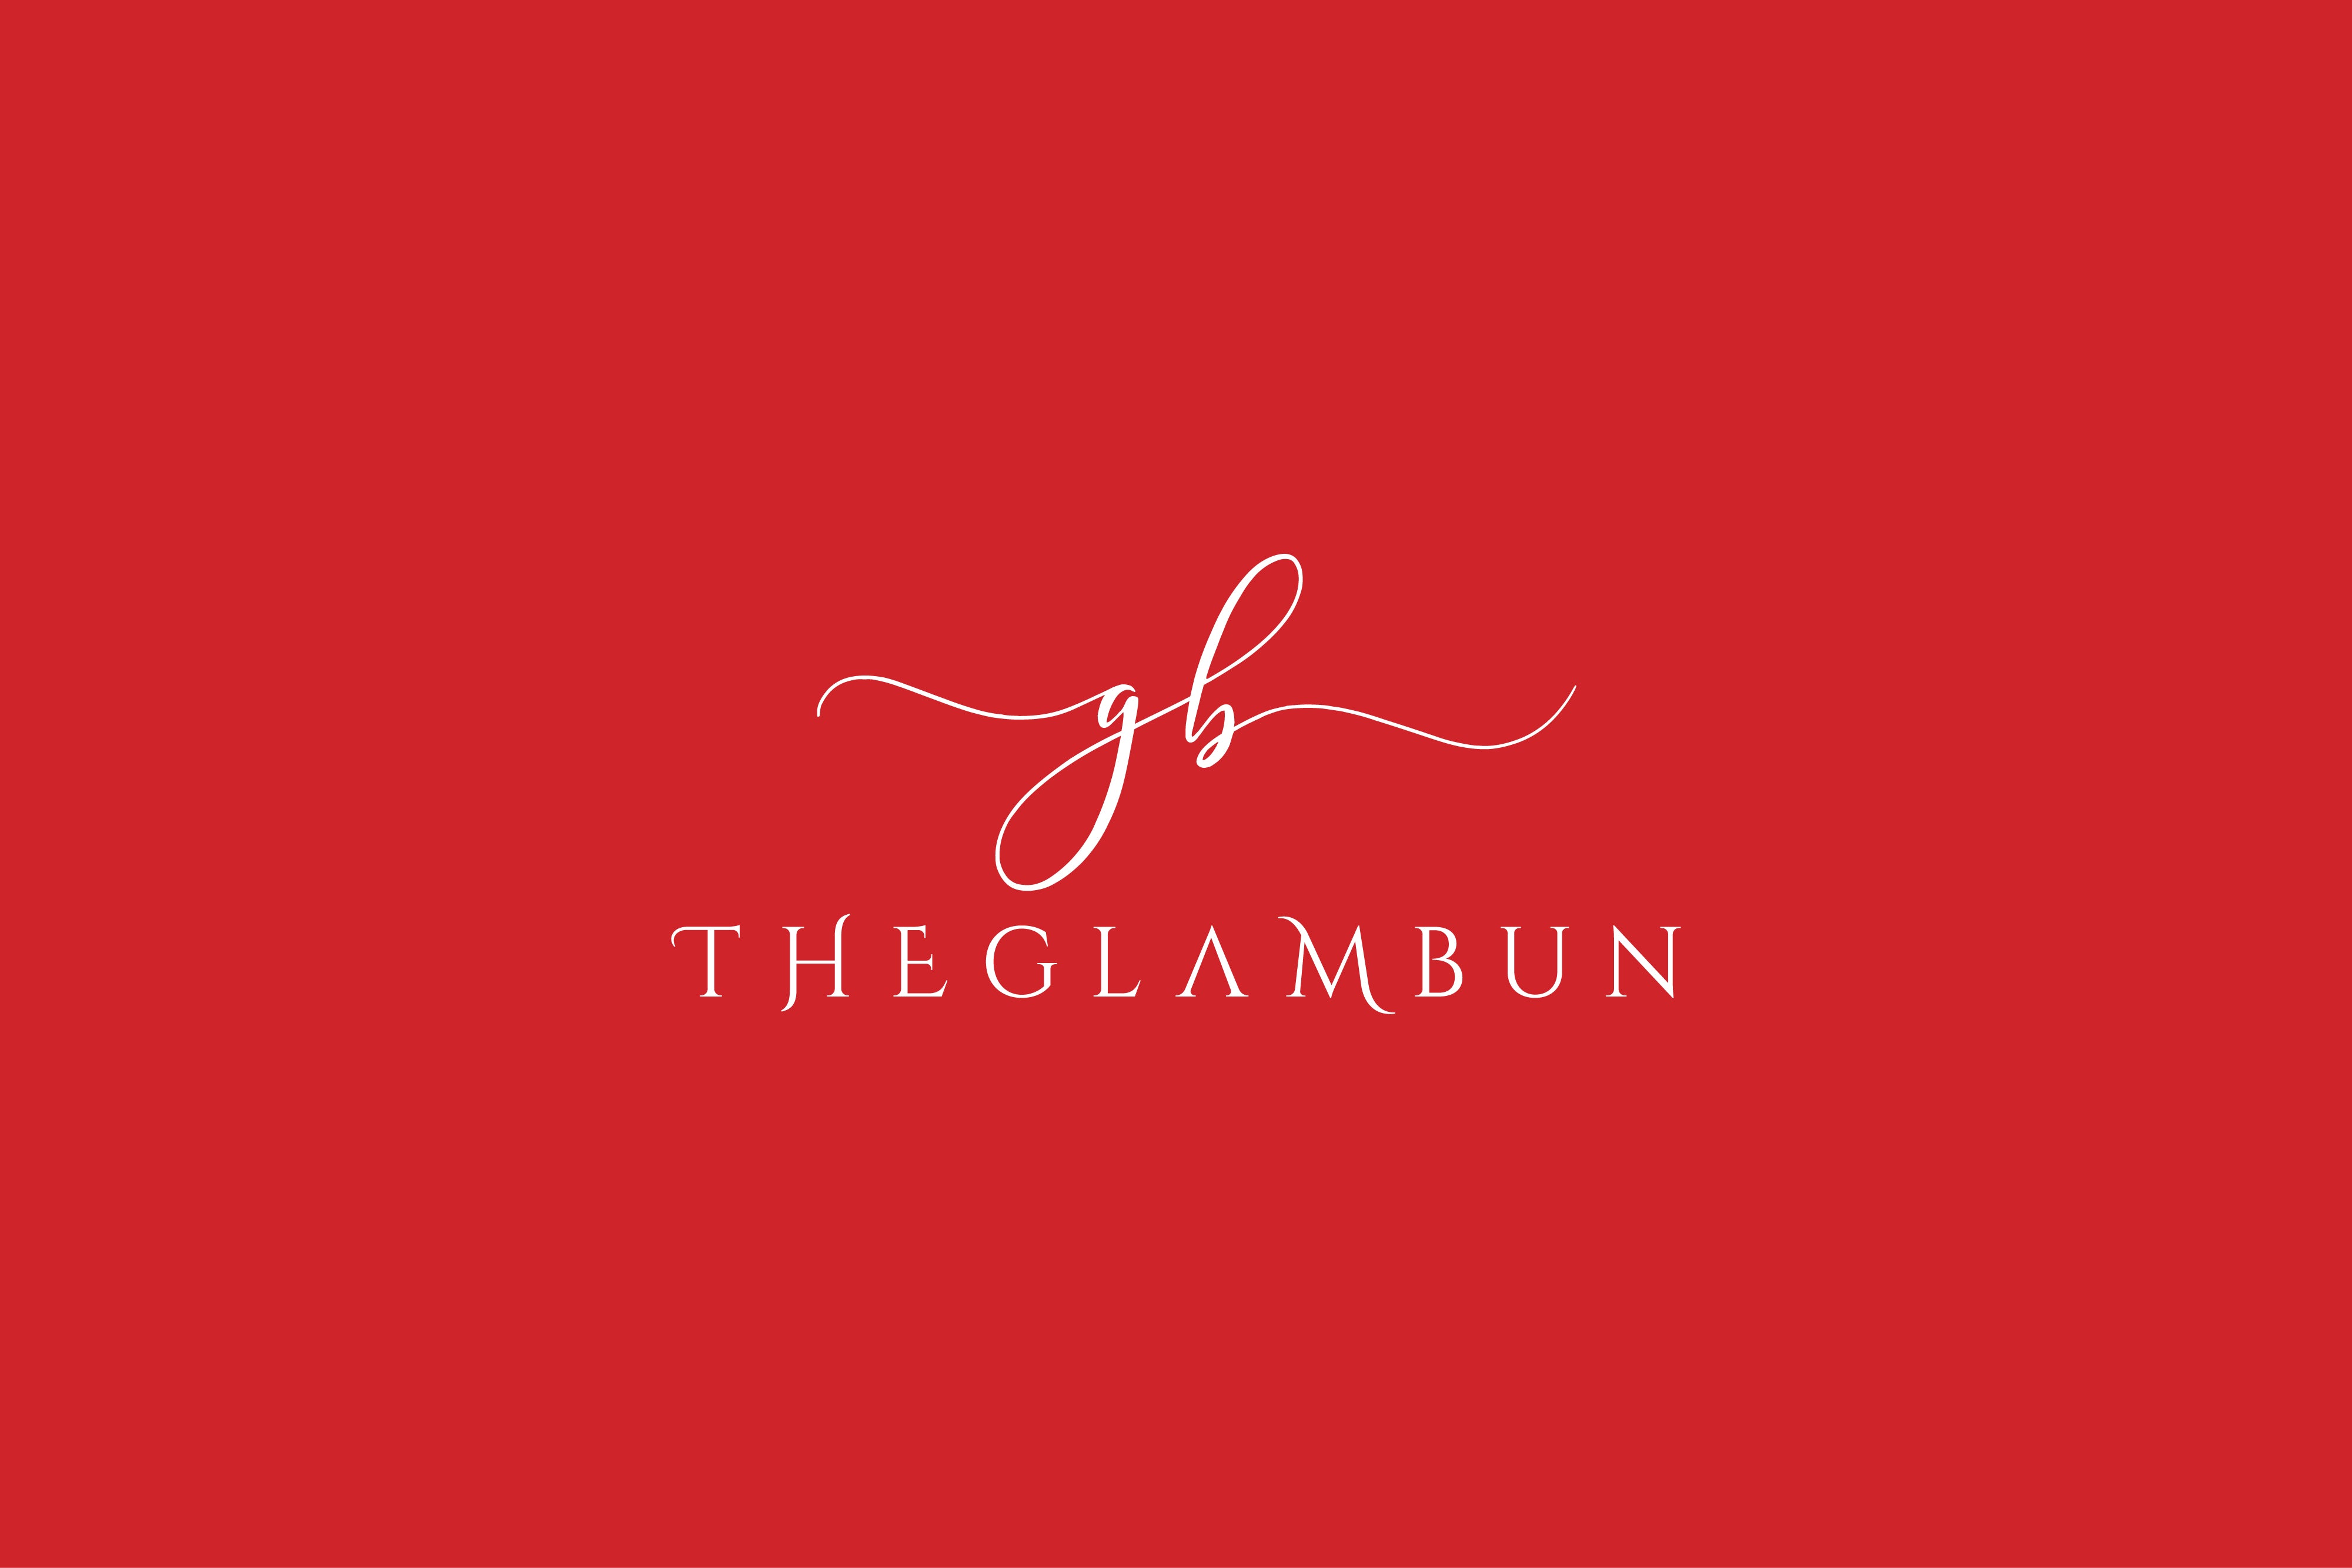 TheGlamBun